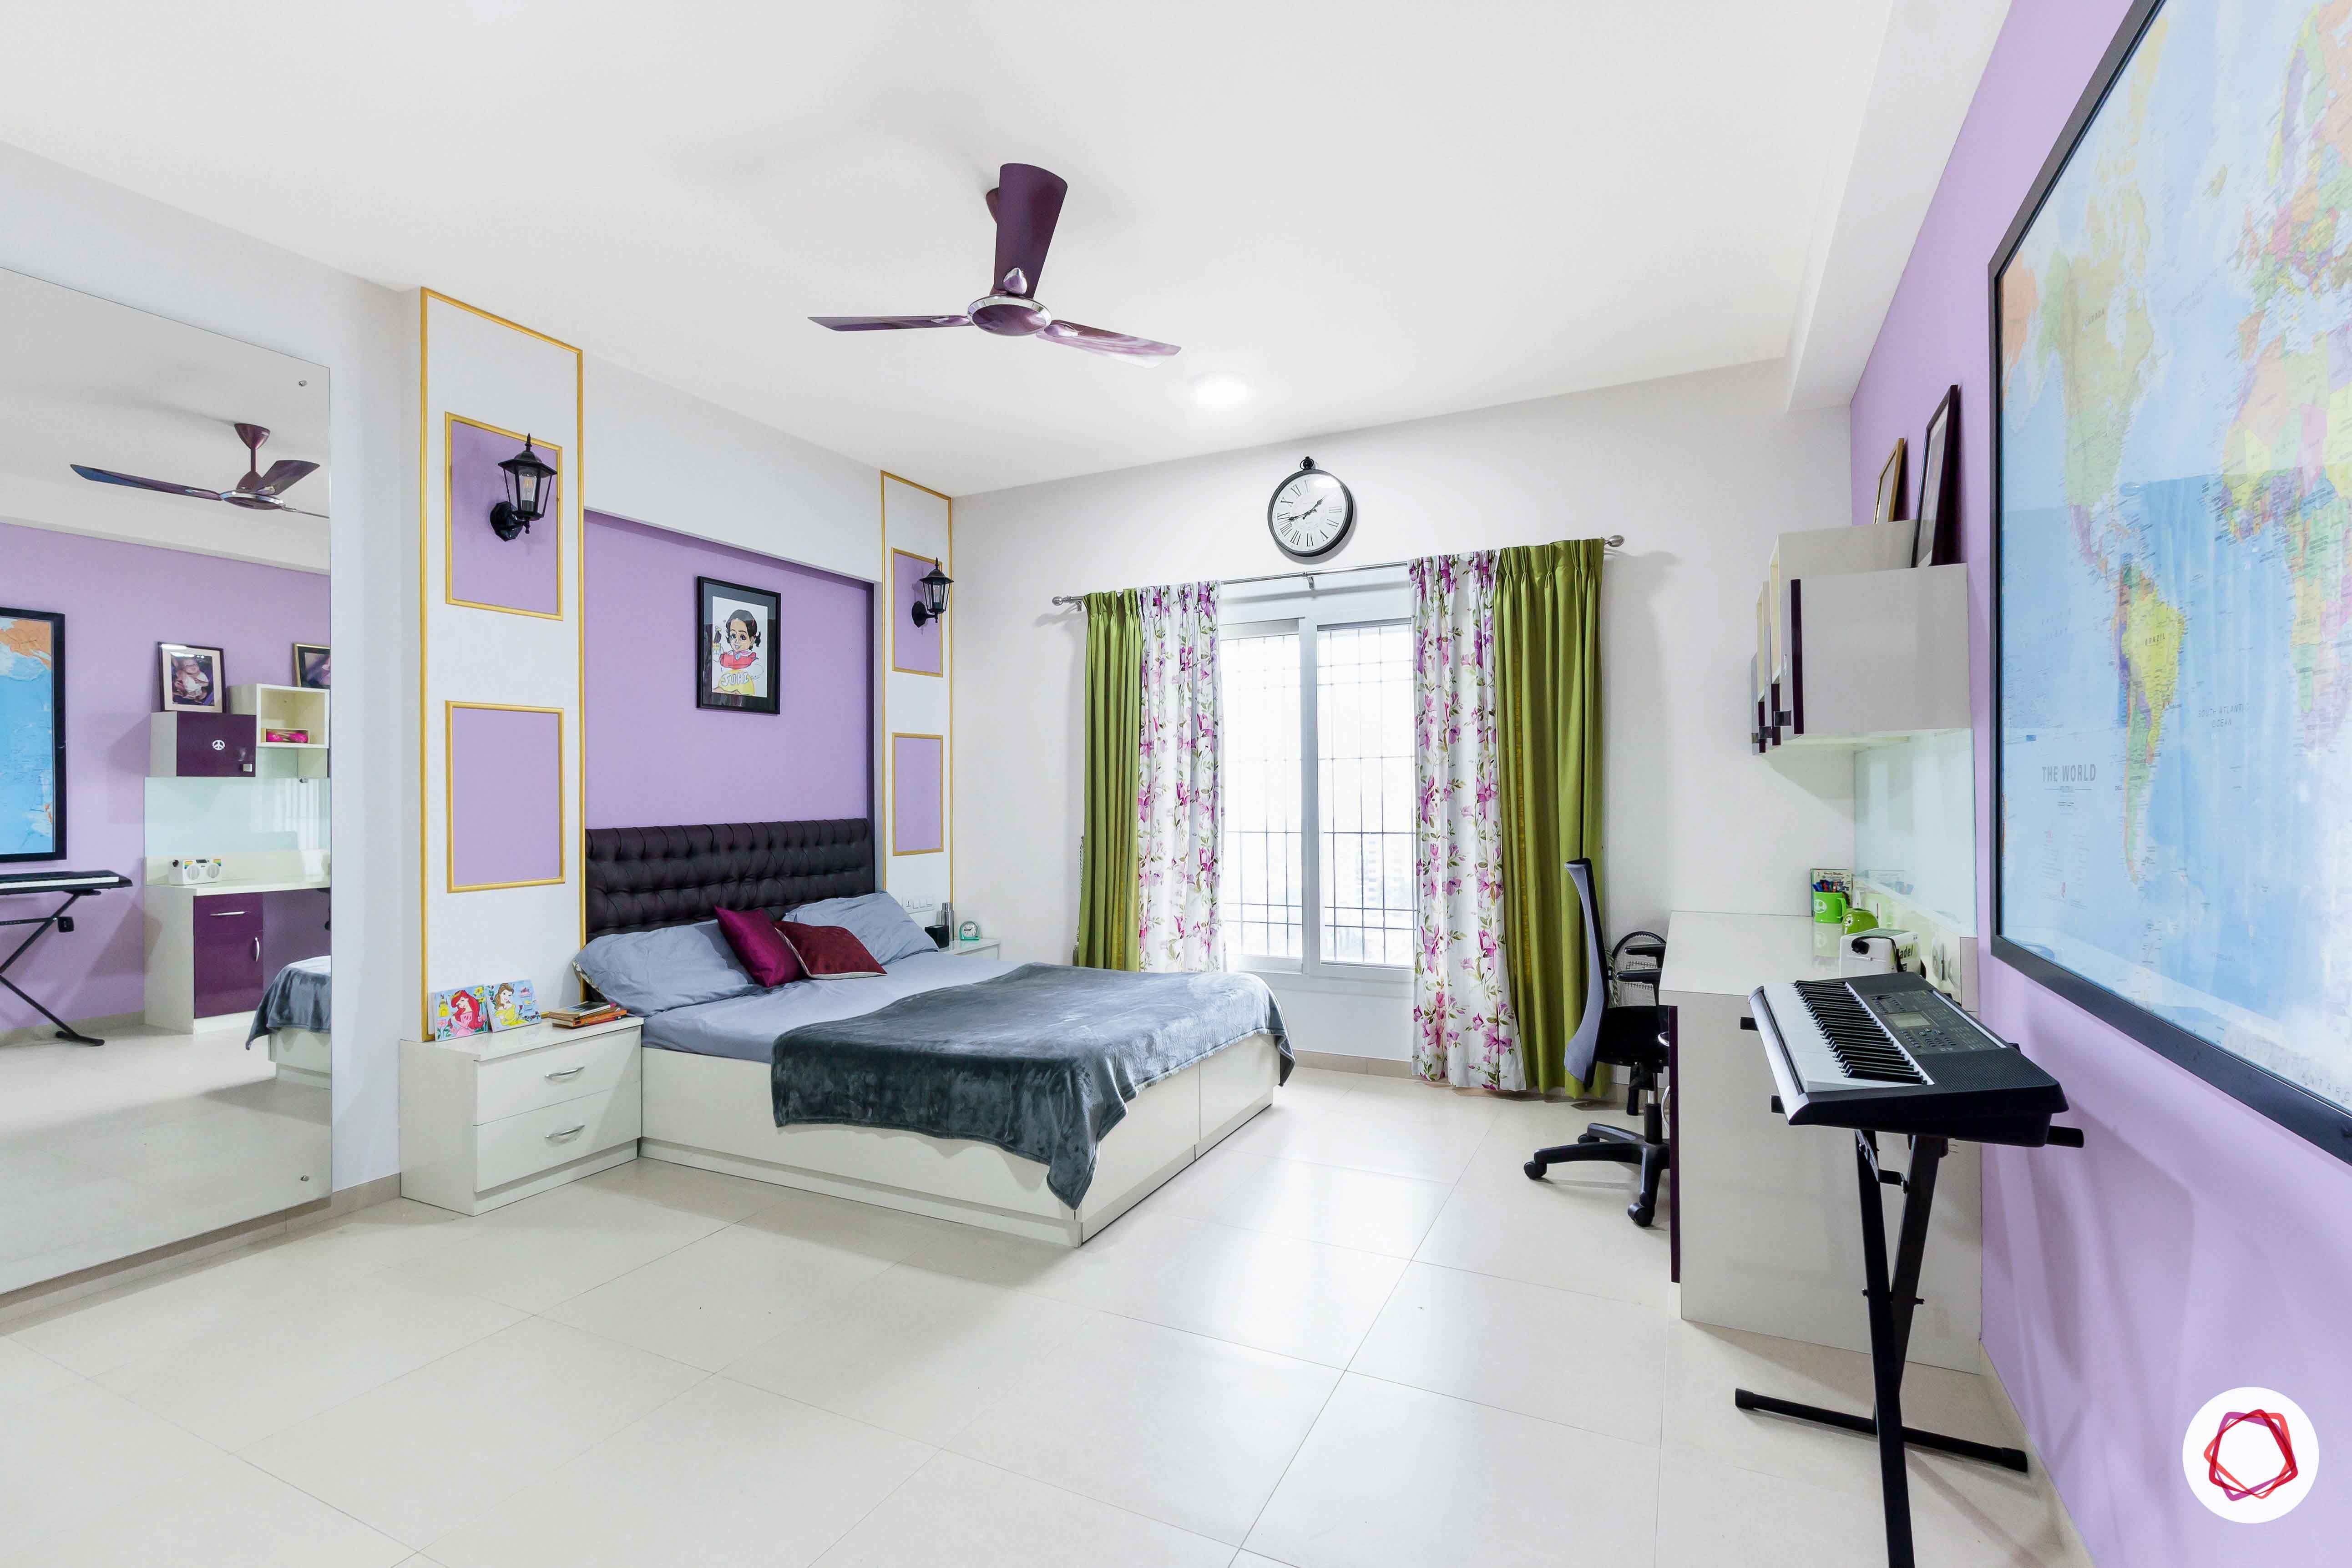 sobha forest view-girls bedroom-purple room-white flooring